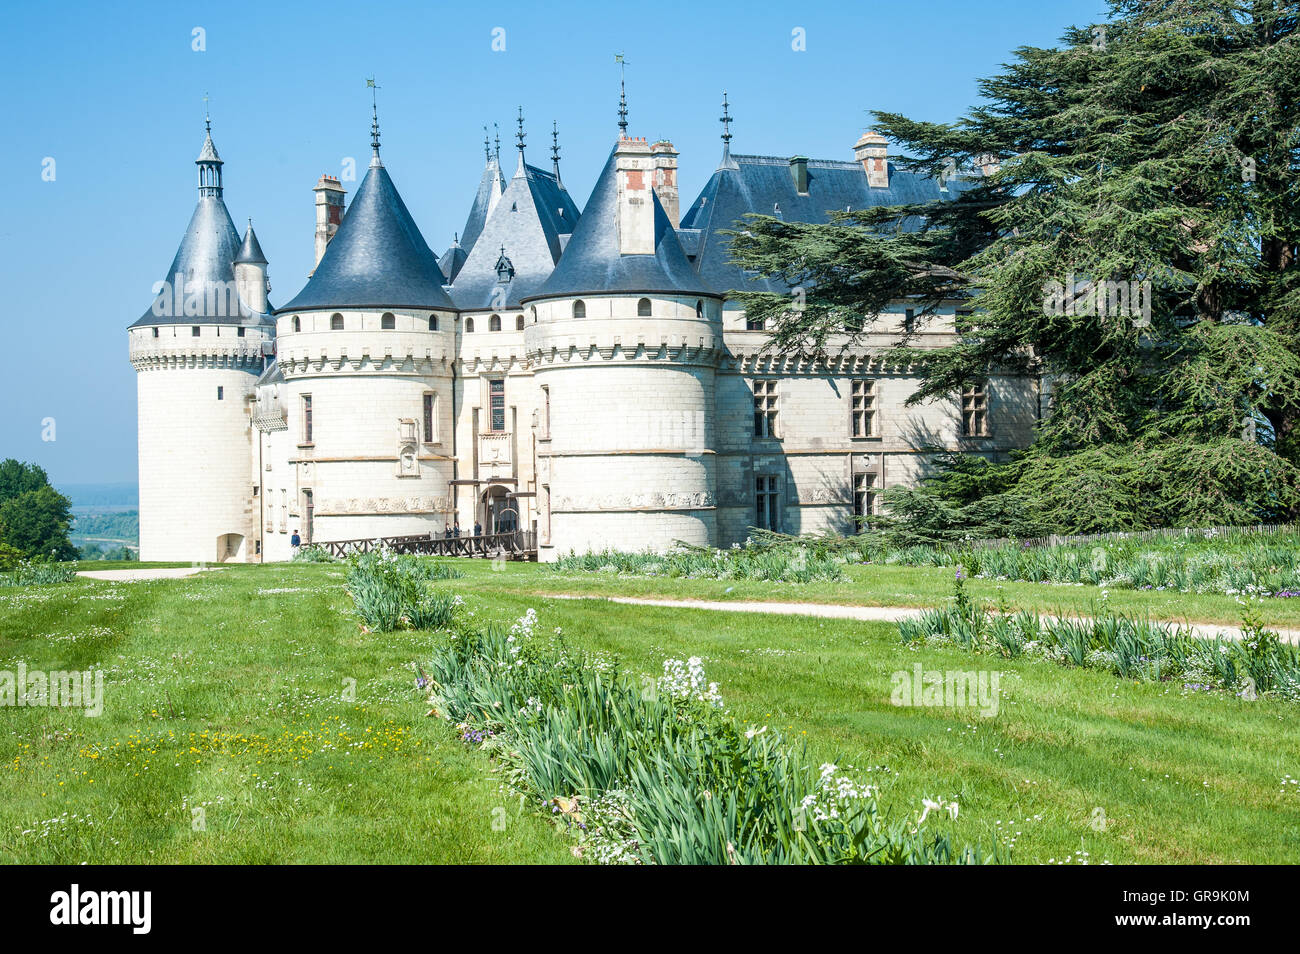 Castle Château De Chaumont Sur Loire France Stock Photo